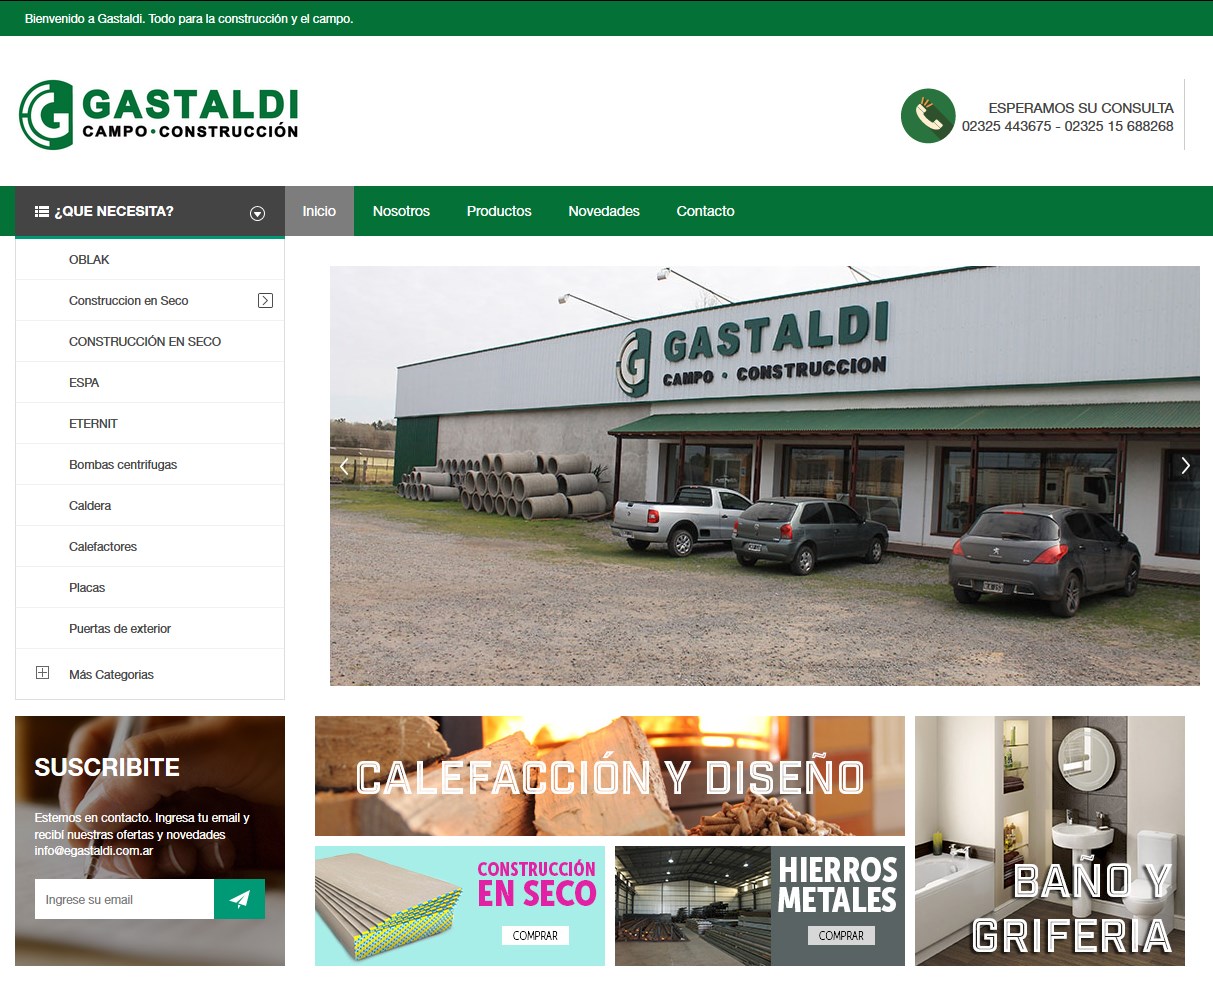 Gastaldi Campo y Construcción